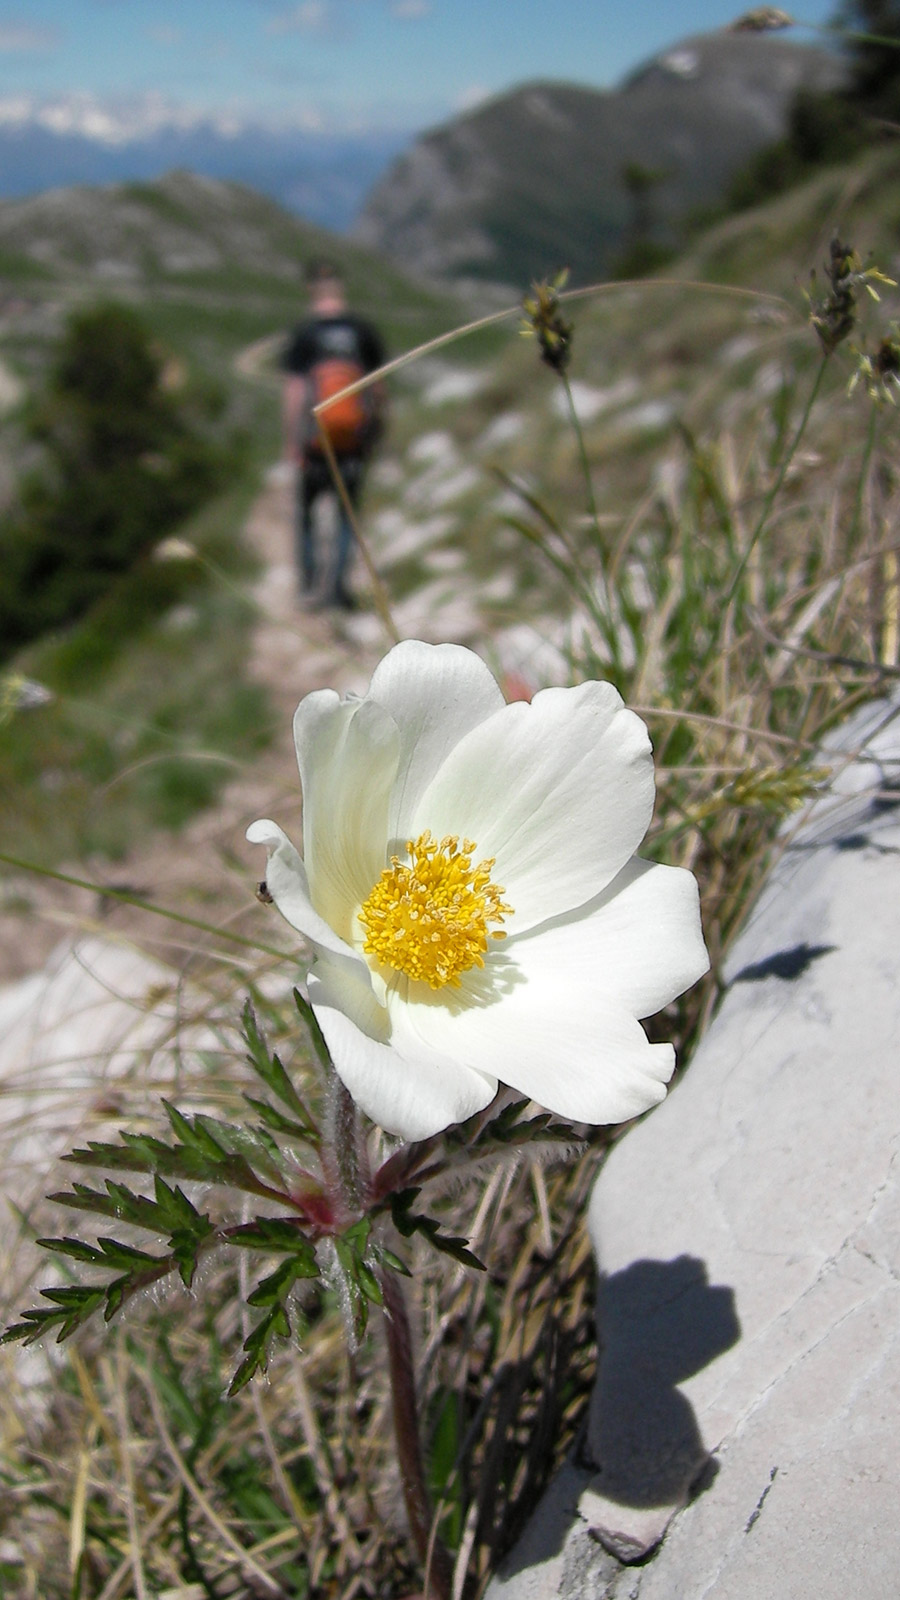 Wikimedia Commons - Pulsatilla alpina at Monte Baldo - Author: Danny S.